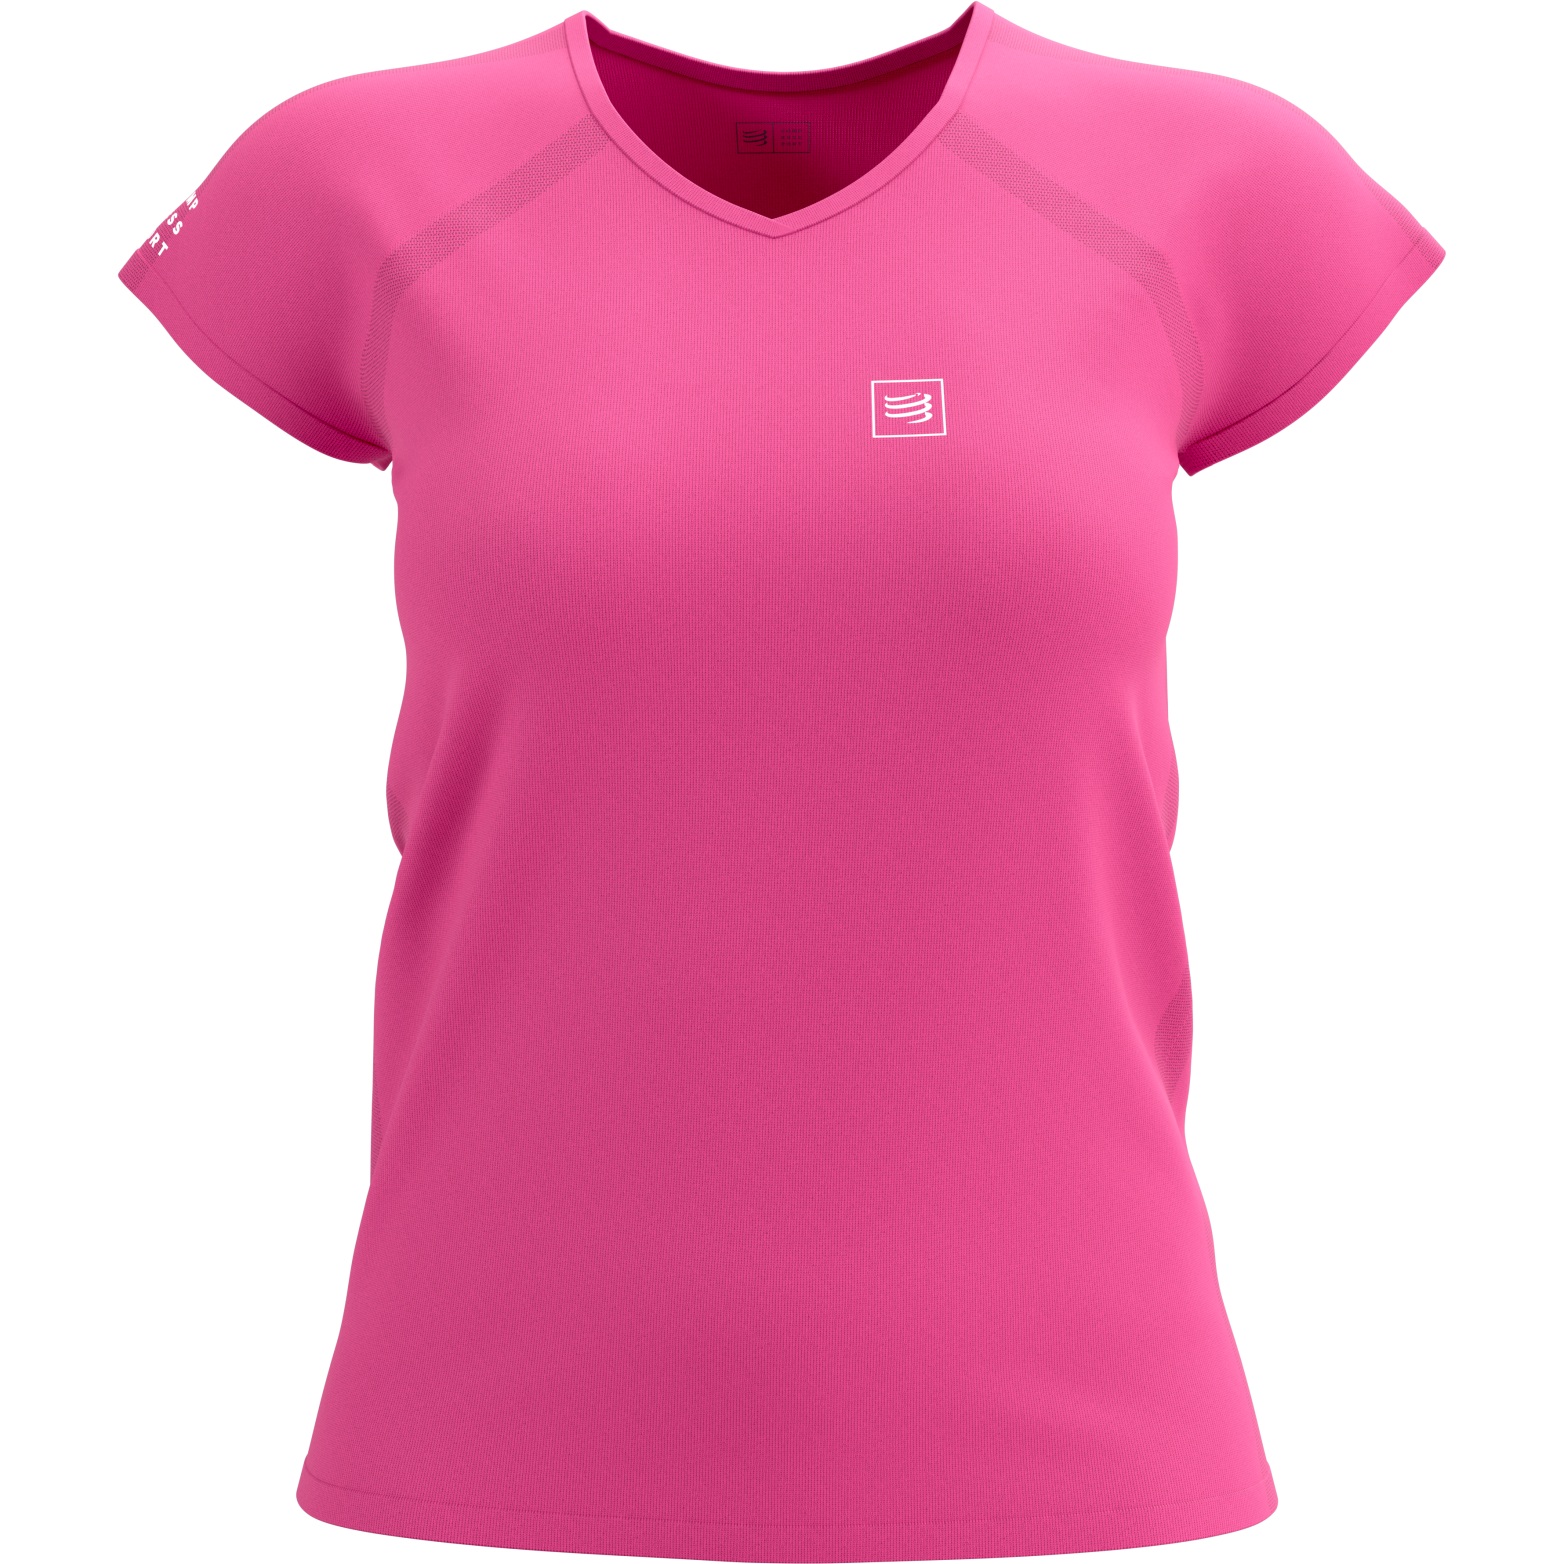 Produktbild von Compressport Training T-Shirt Damen - magenta